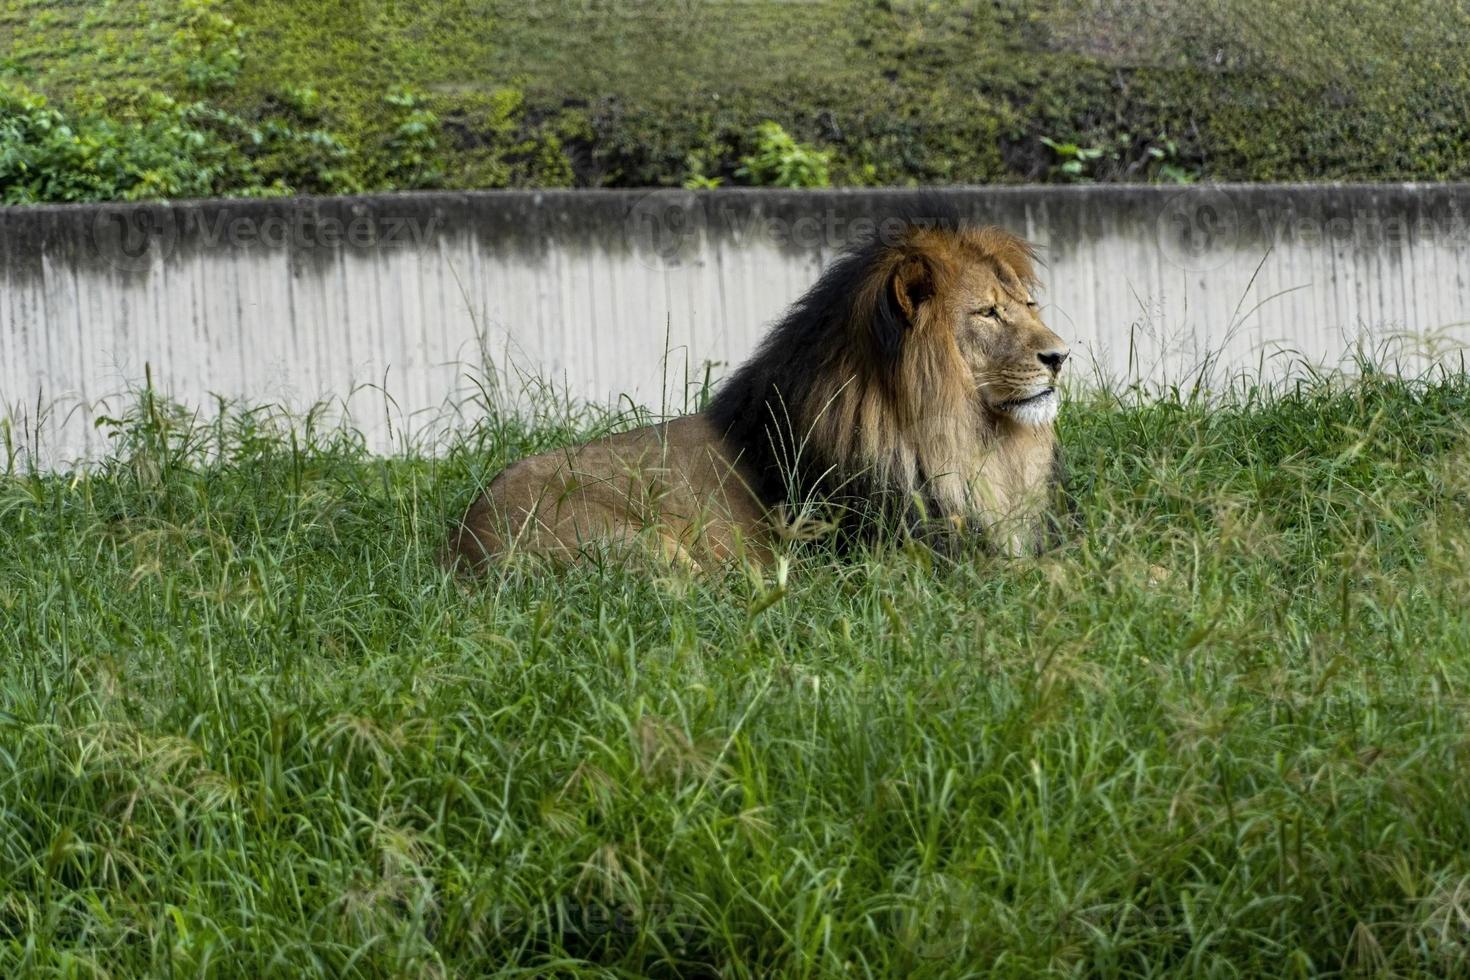 león sentado descansando sobre la hierba, zoo guadalajara méxico foto